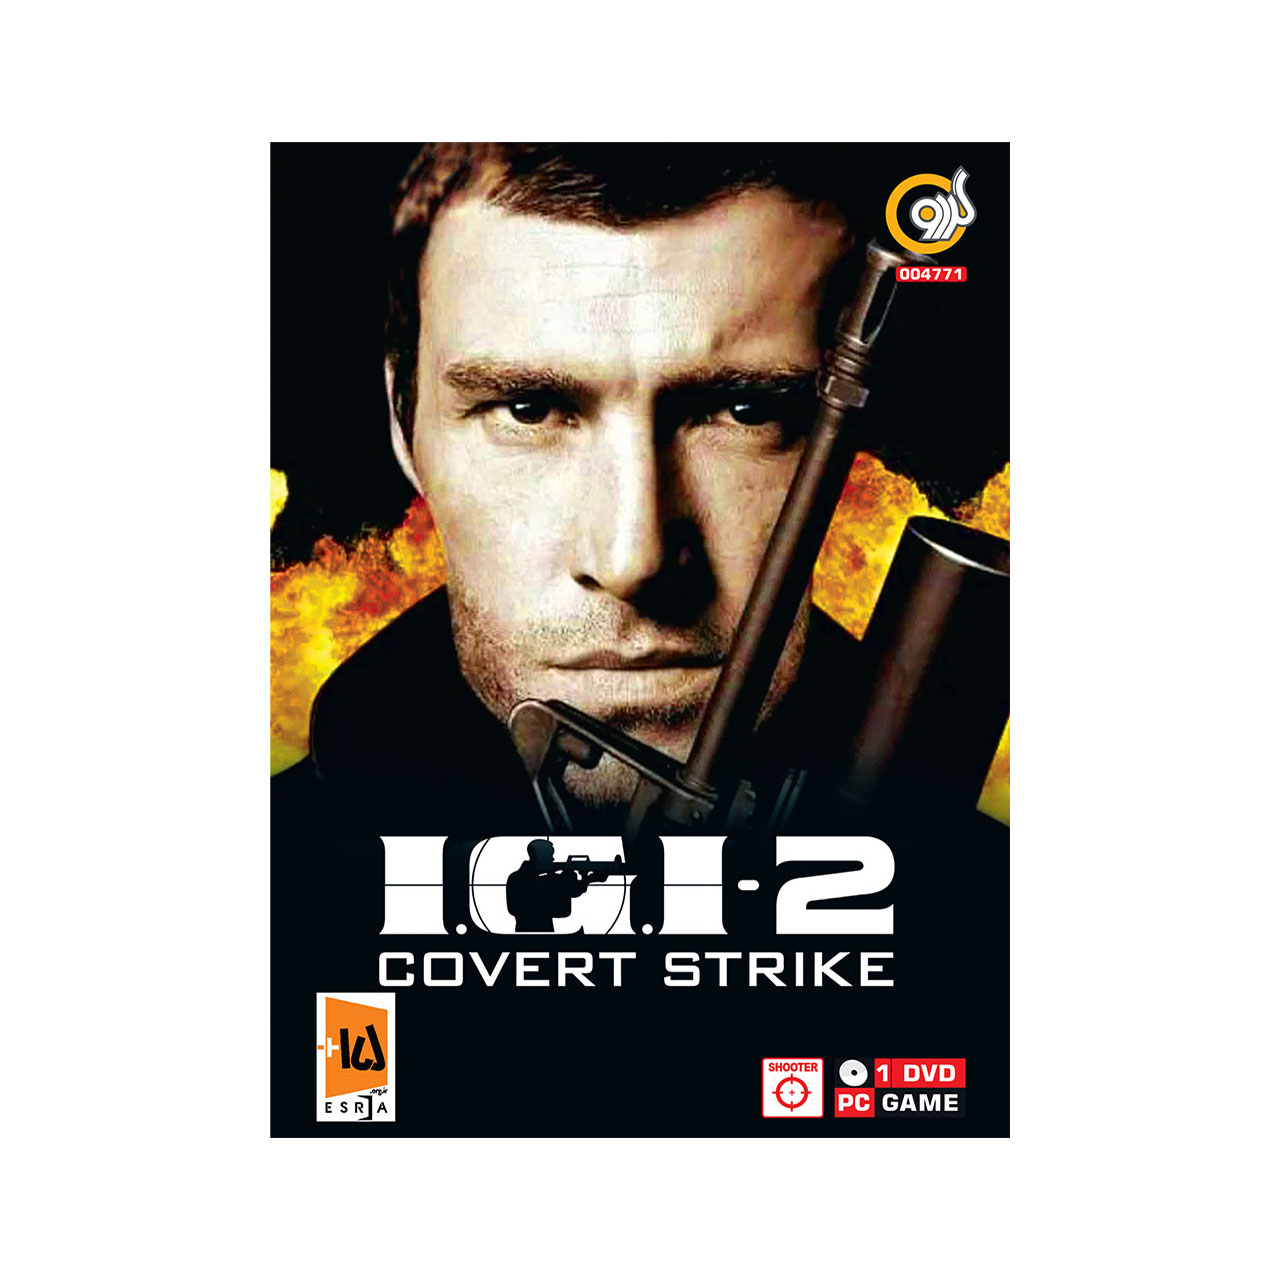 بازی I.G.I.2 Covert Strike مخصوص PC